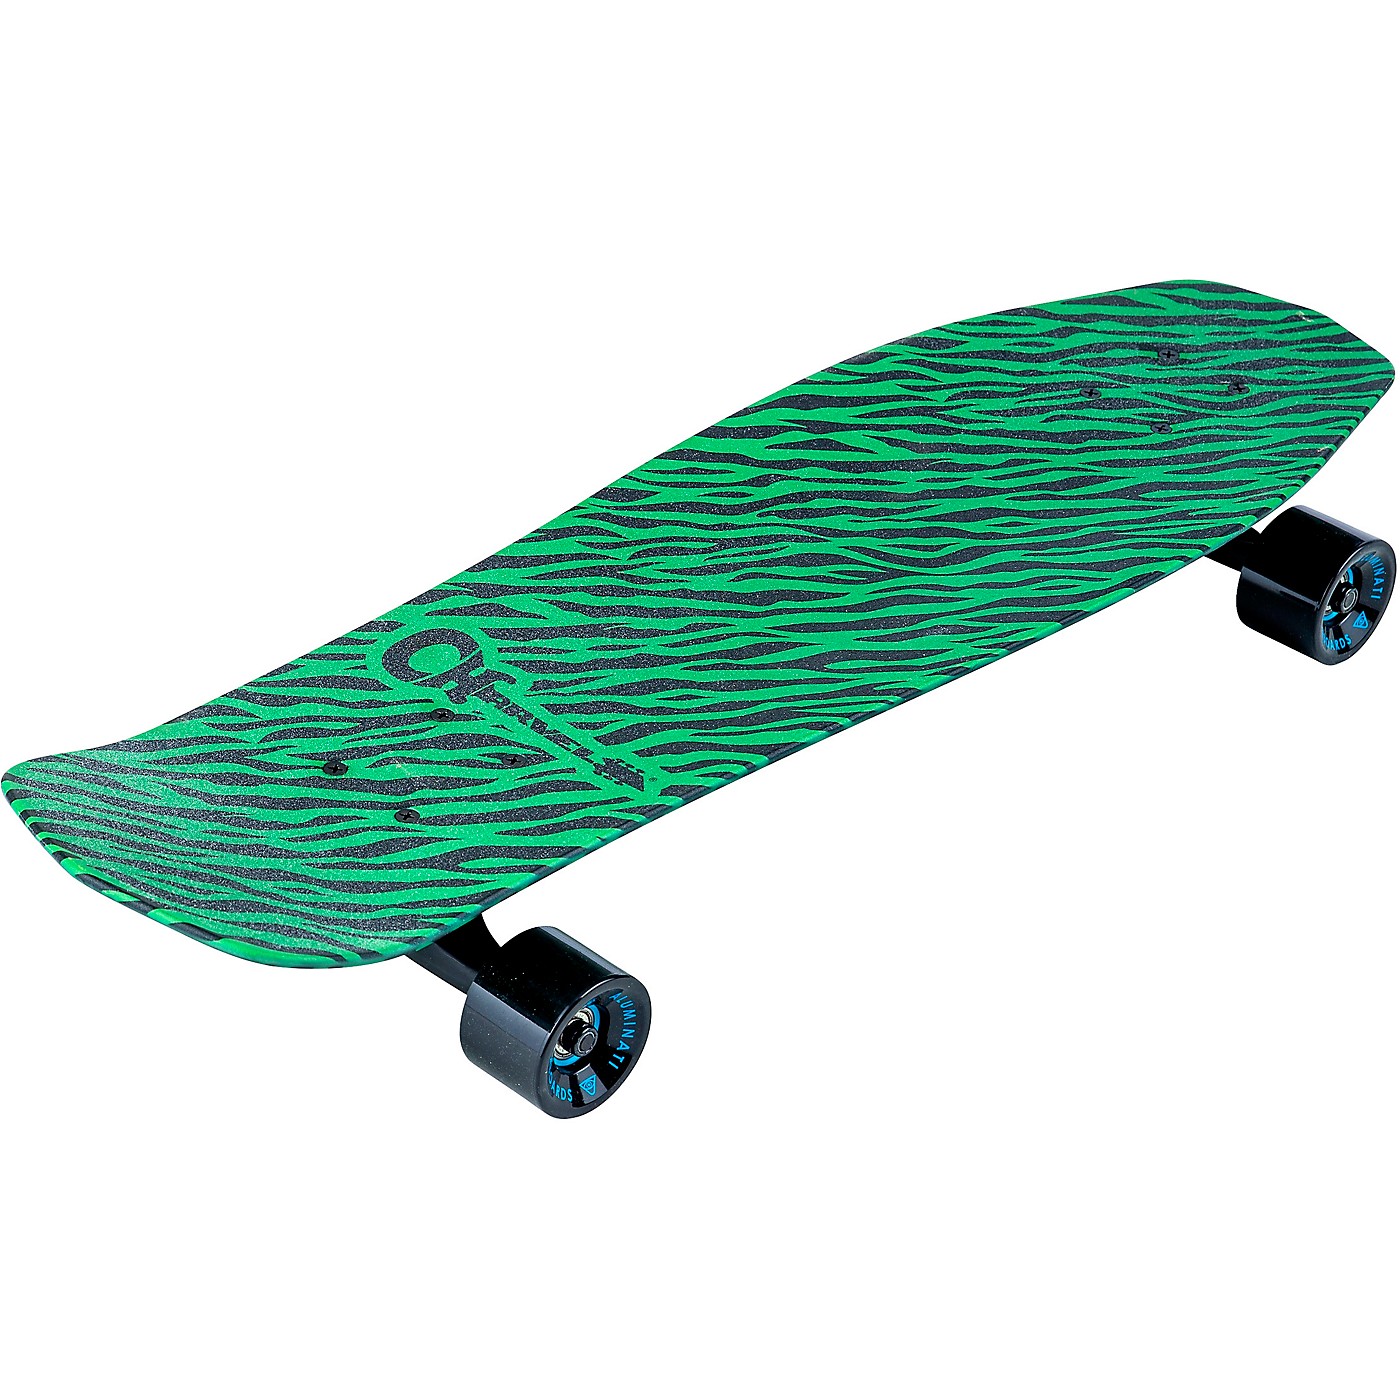 Charvel Green Striped Skateboard by Aluminat thumbnail